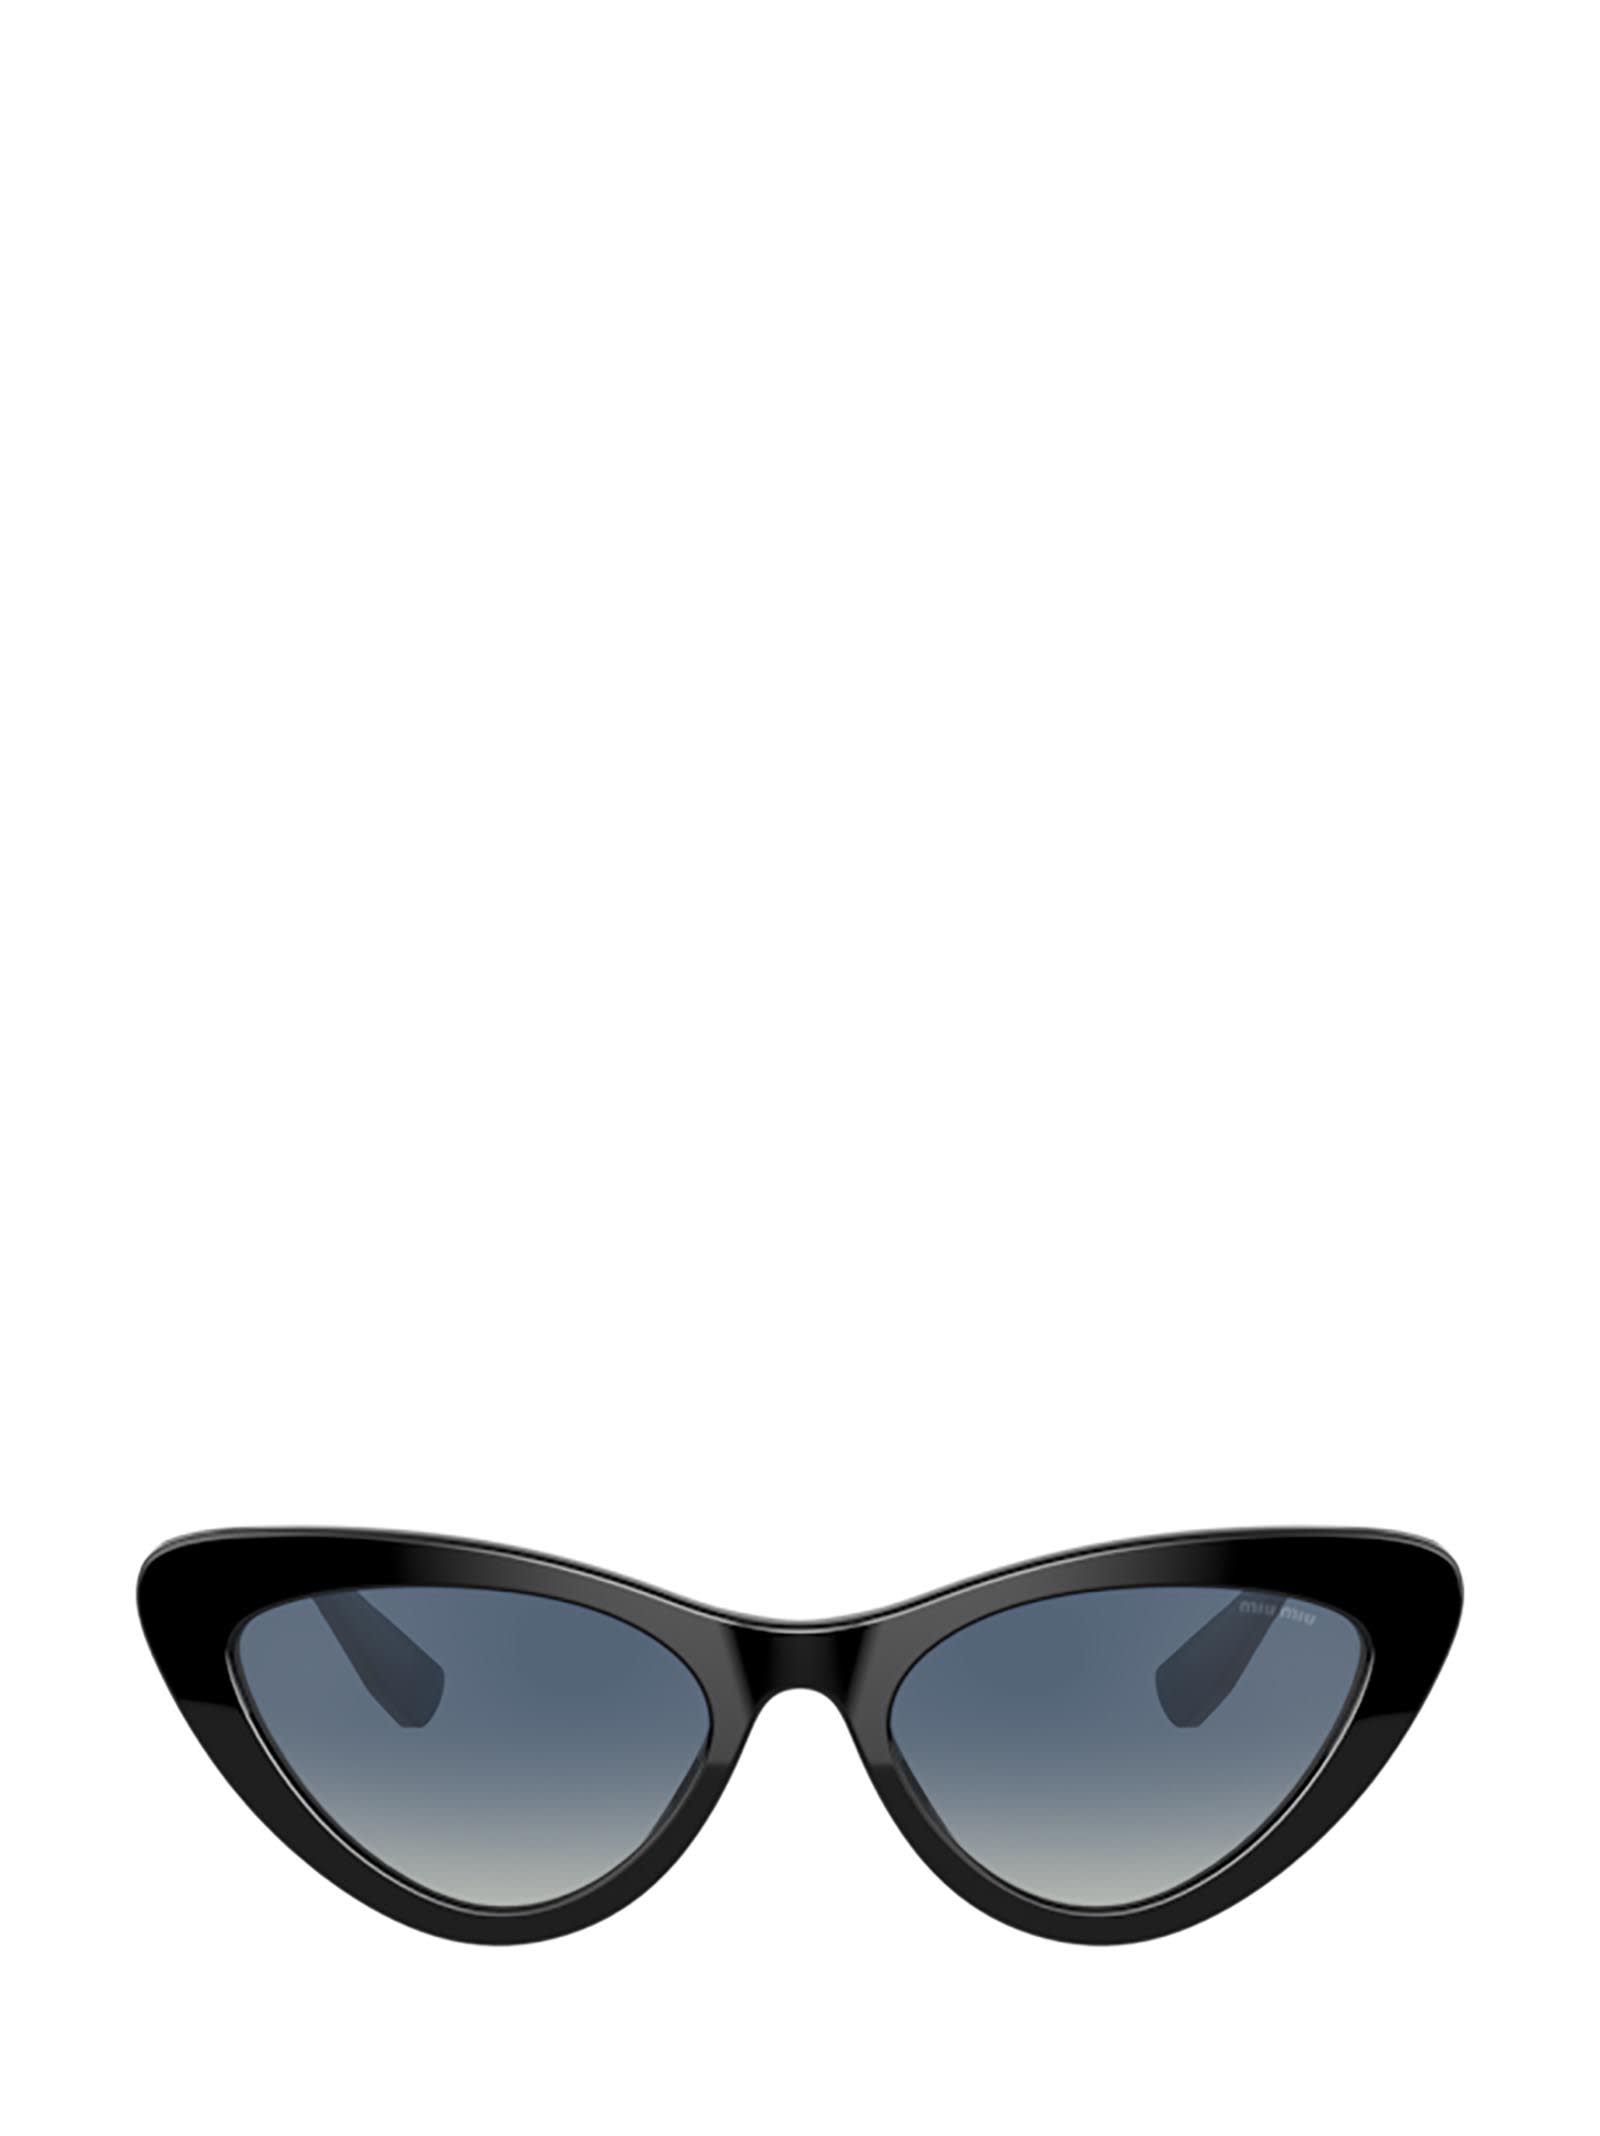 Miu Miu Eyewear Miu Miu Mu 01vs Black Sunglasses